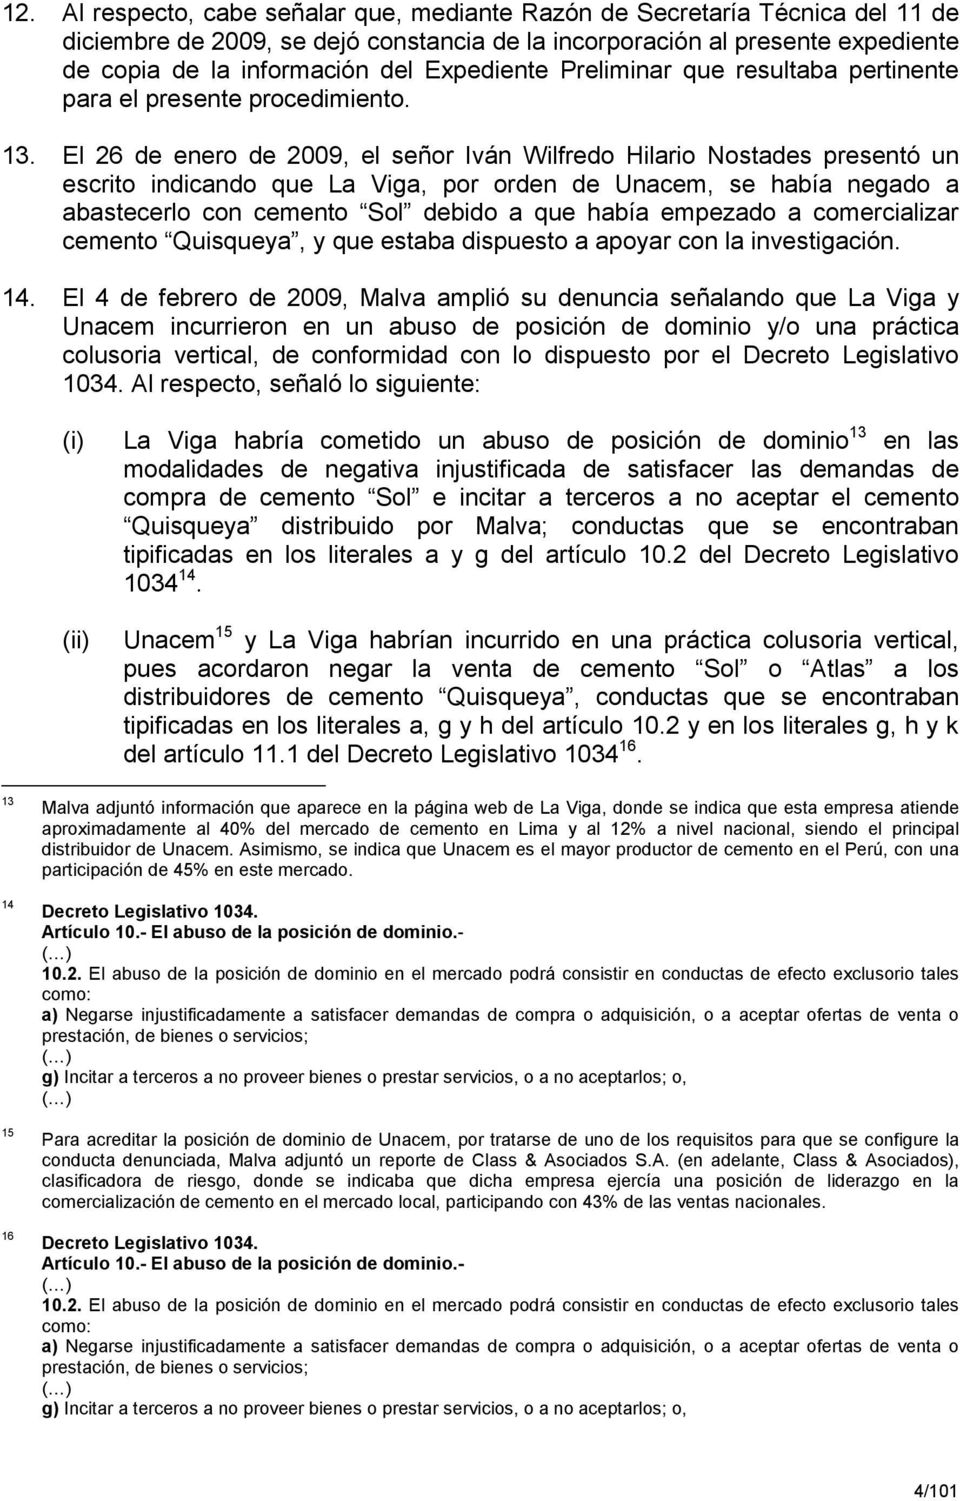 El 26 de enero de 2009, el señor Iván Wilfredo Hilario Nostades presentó un escrito indicando que La Viga, por orden de Unacem, se había negado a abastecerlo con cemento Sol debido a que había